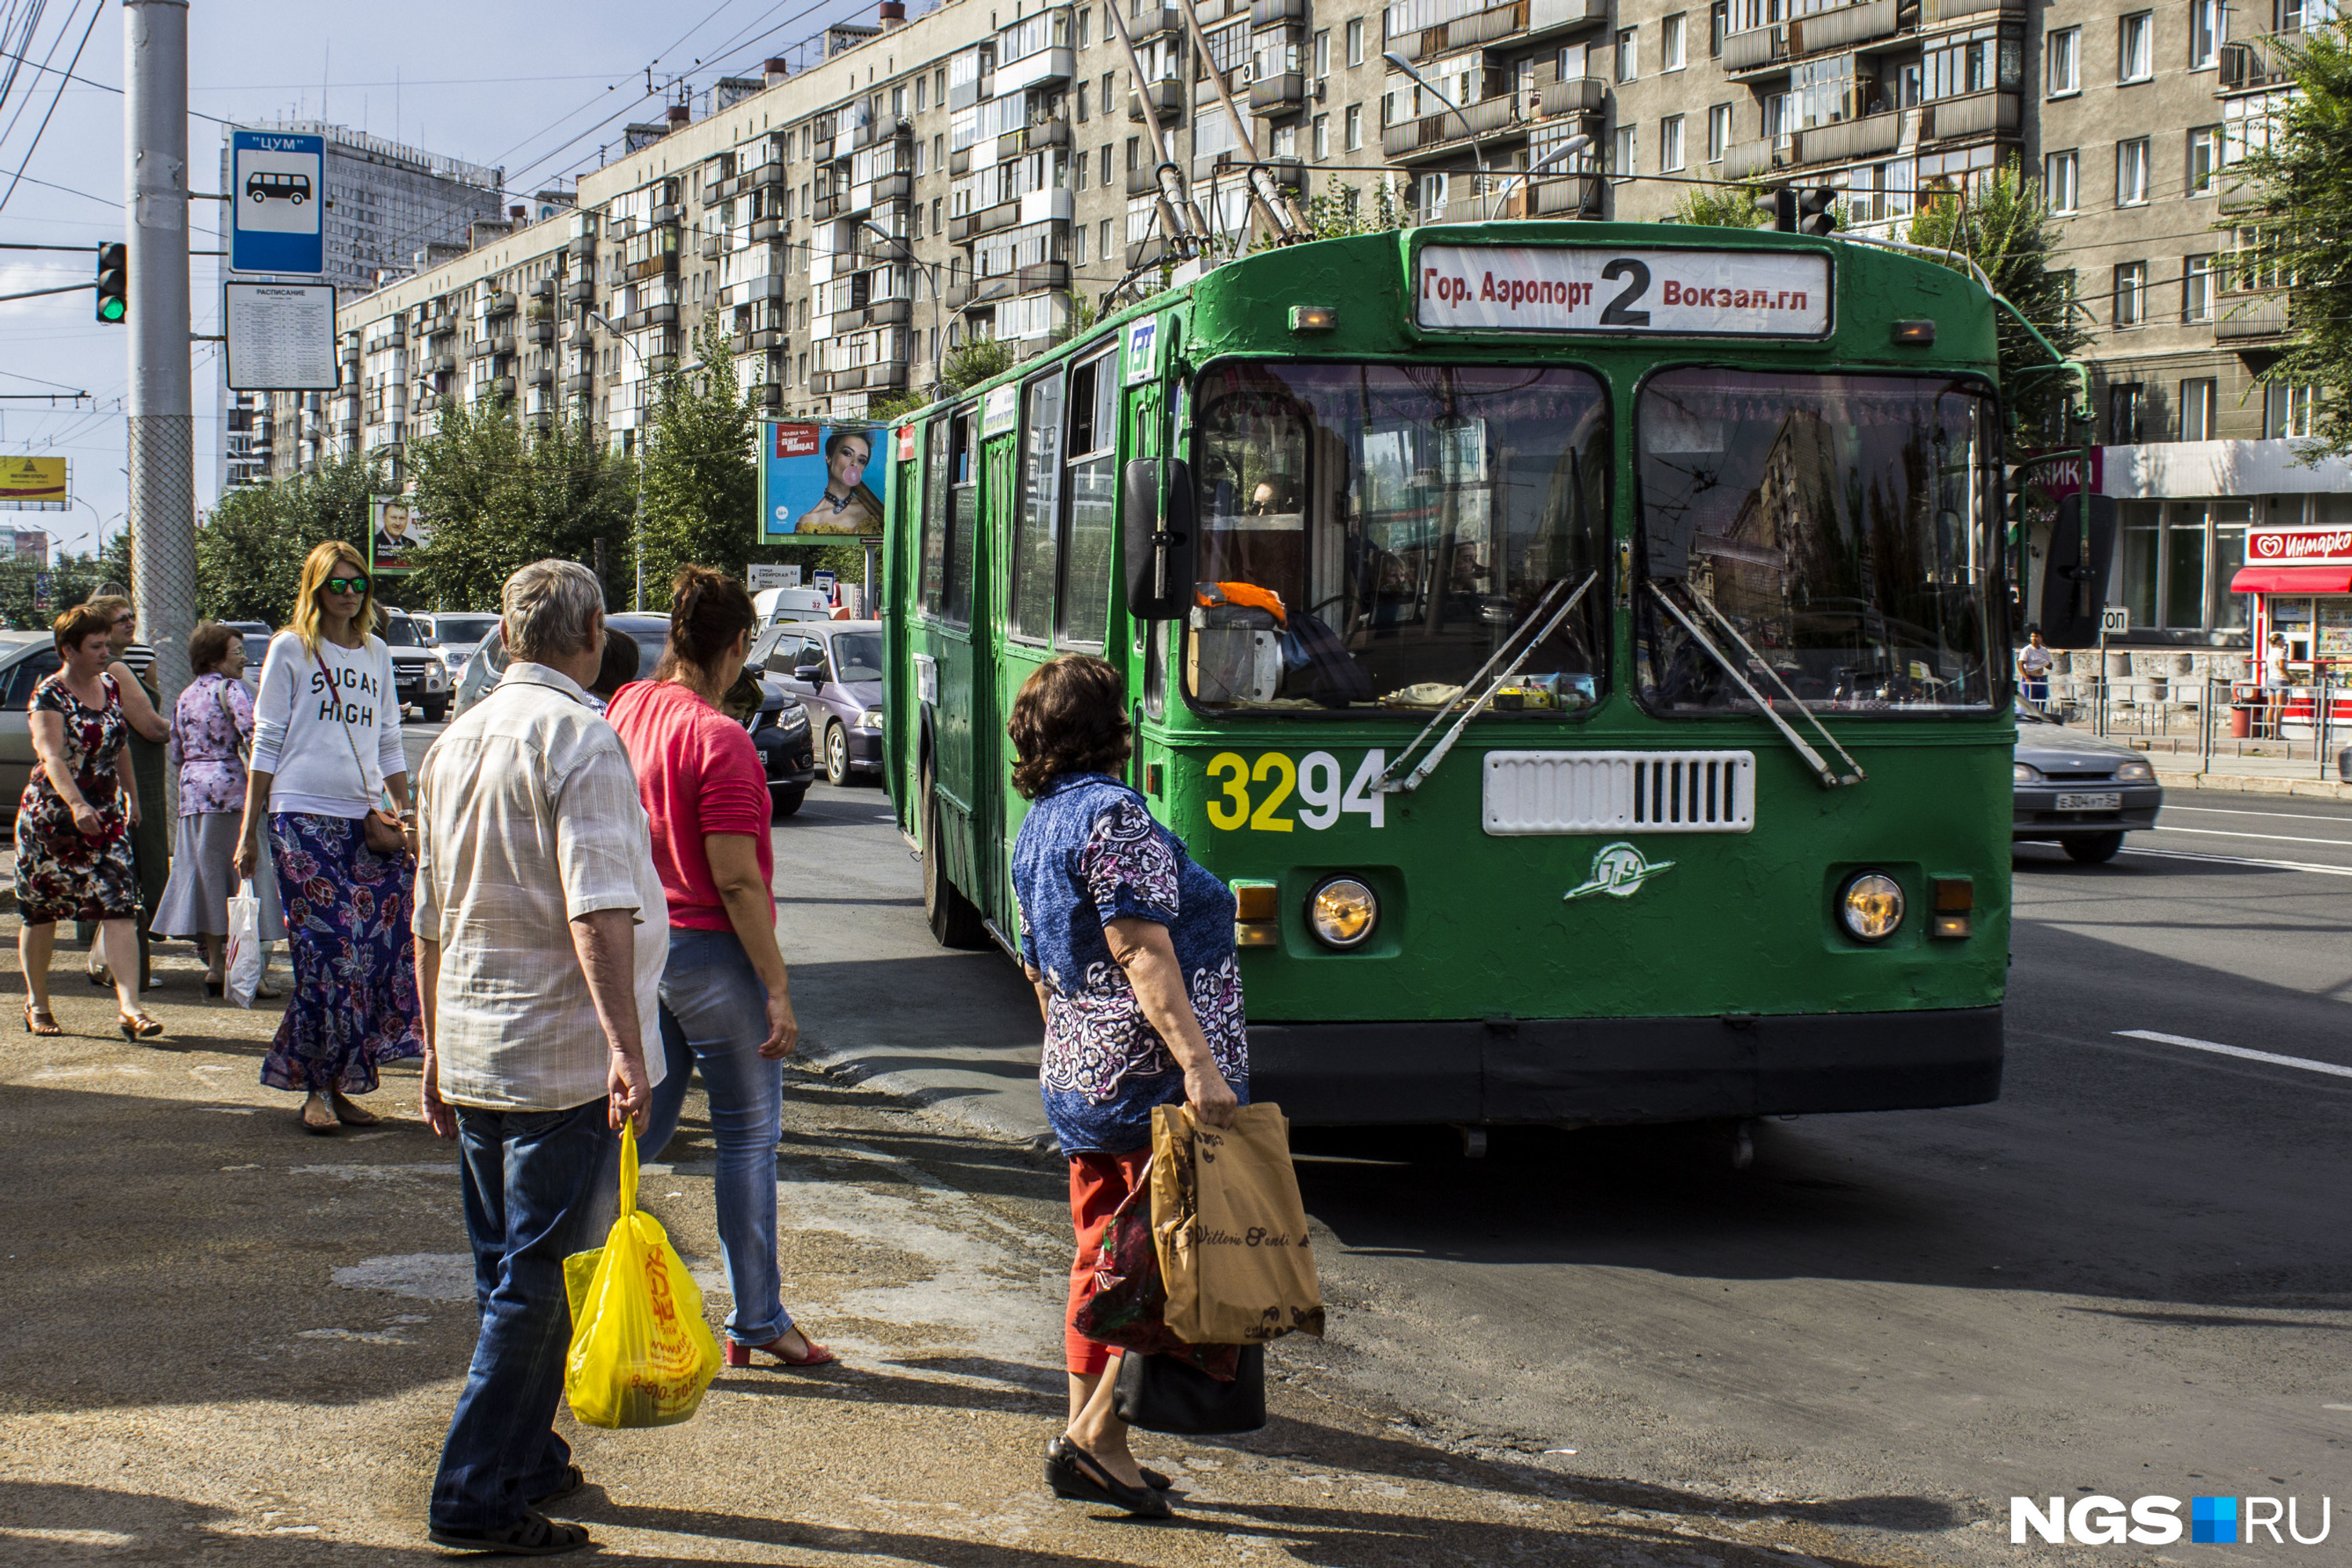 В этом году в Новосибирск должны привезти 9 новых троллейбусов с автономным ходом. Уже объявили <a href="https://ngs.ru/text/transport/2022/08/11/71560487/" class="_" target="_blank">закупку</a>